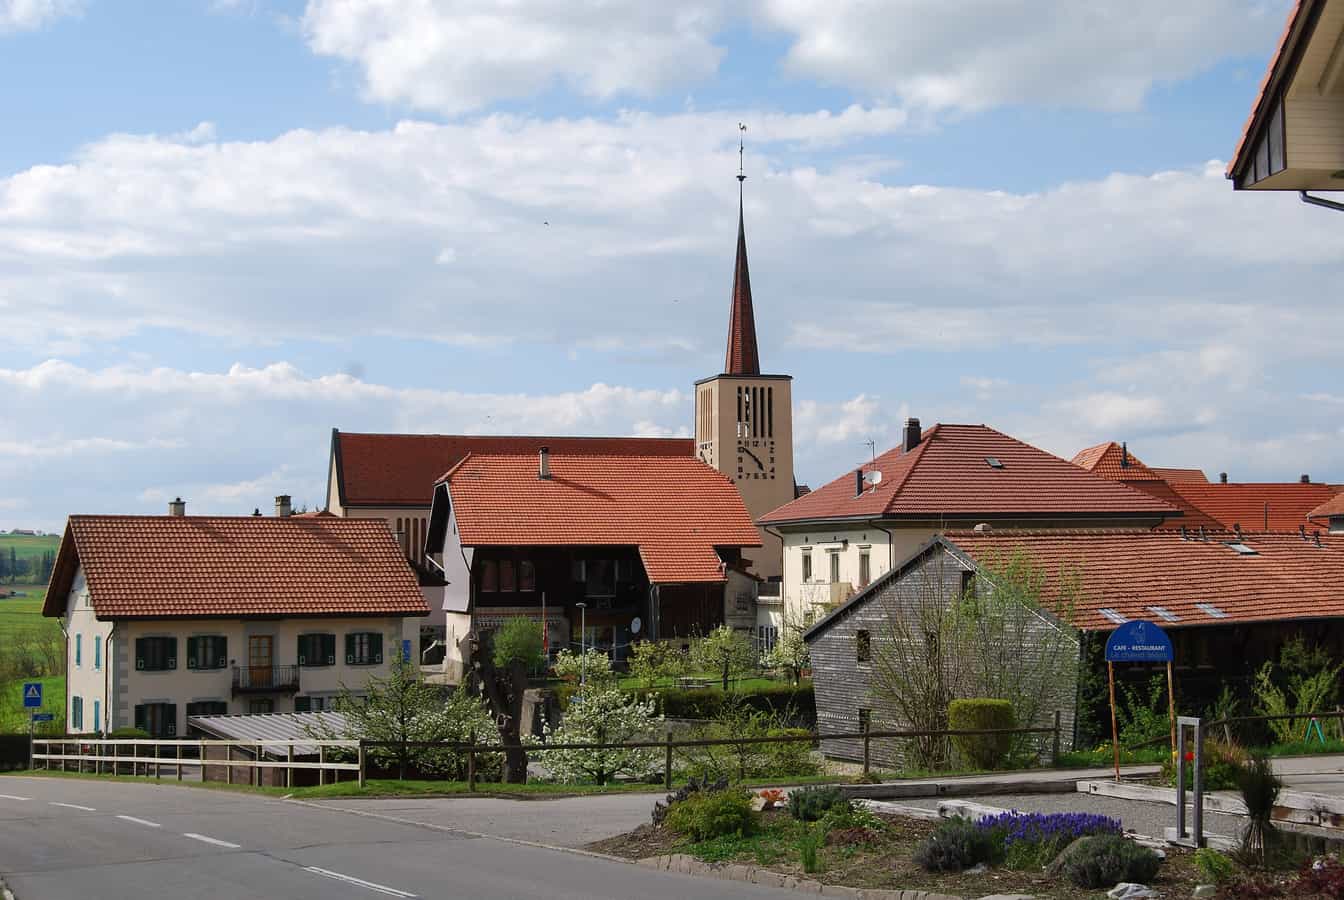 Orsonnens, comune di Villorsonnens, cantone di Friburgo, Svizzera